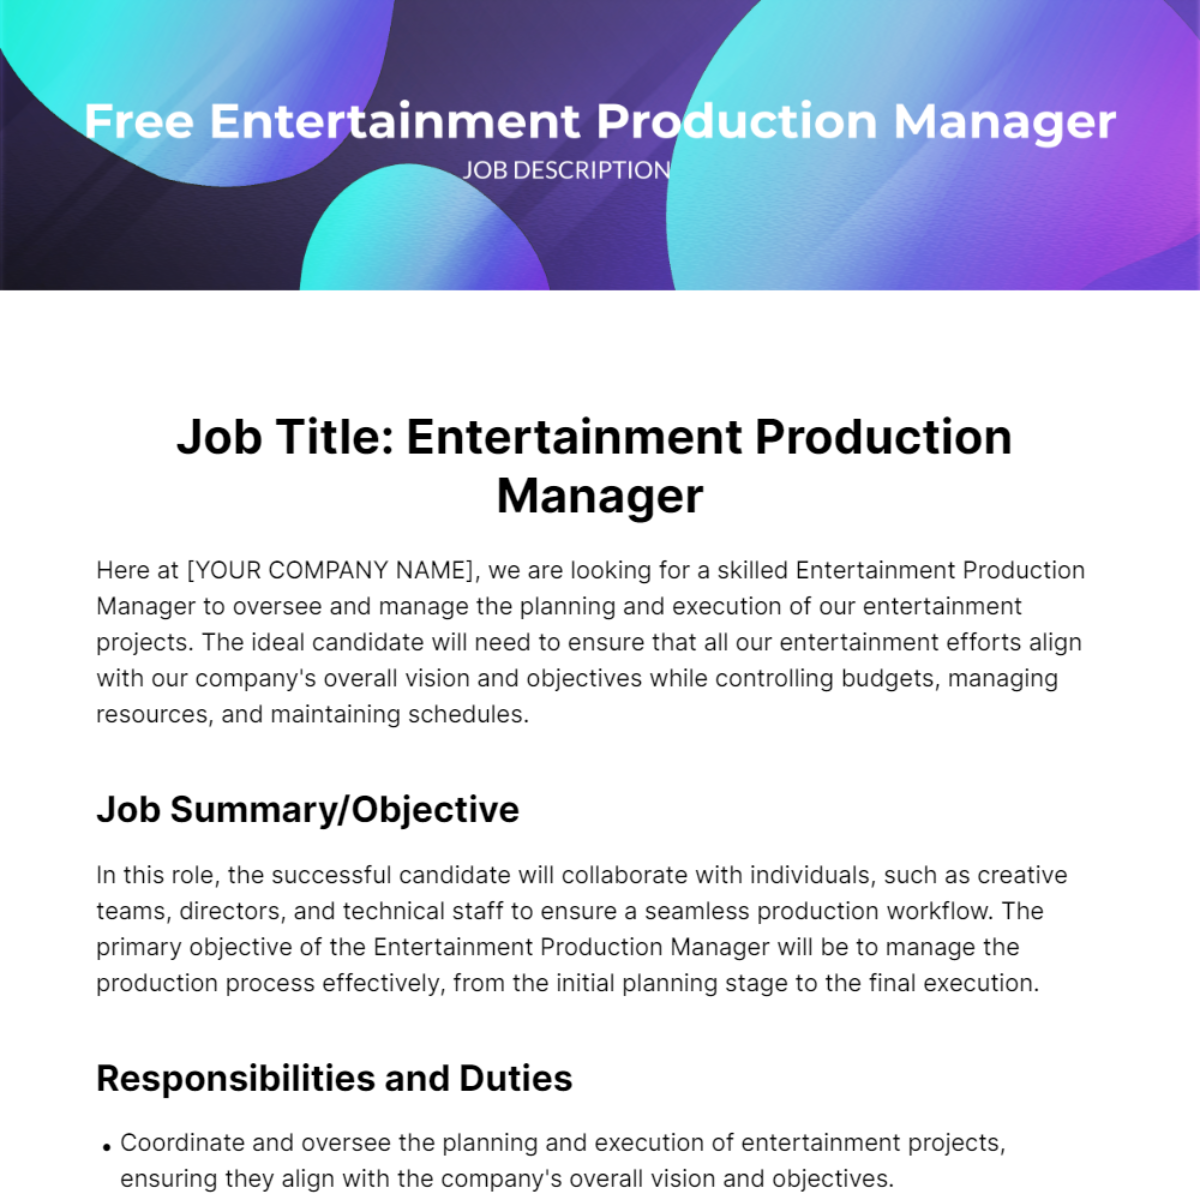 Free Entertainment Production Manager Job Description Template